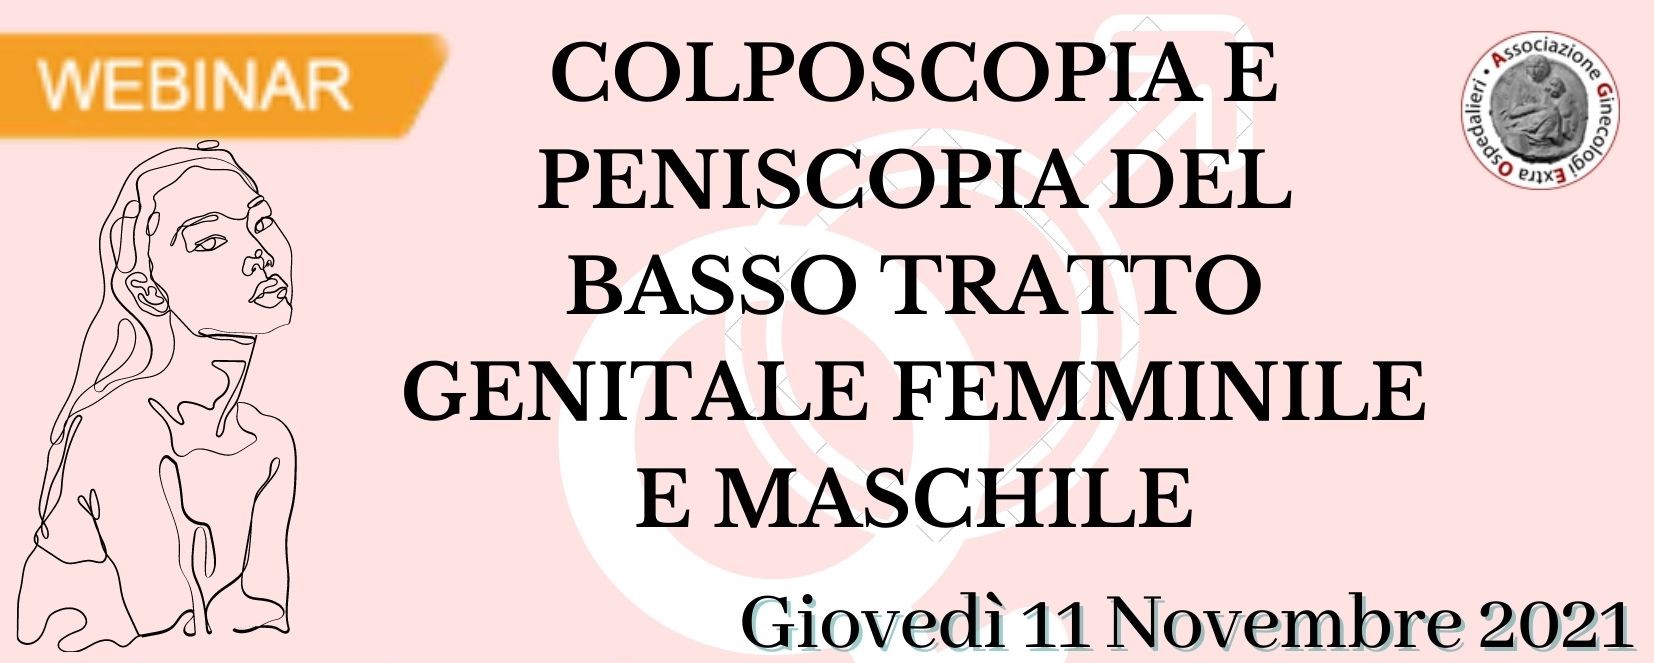 Colposcopia e peniscopia del basso tratto genitale femminile e maschile